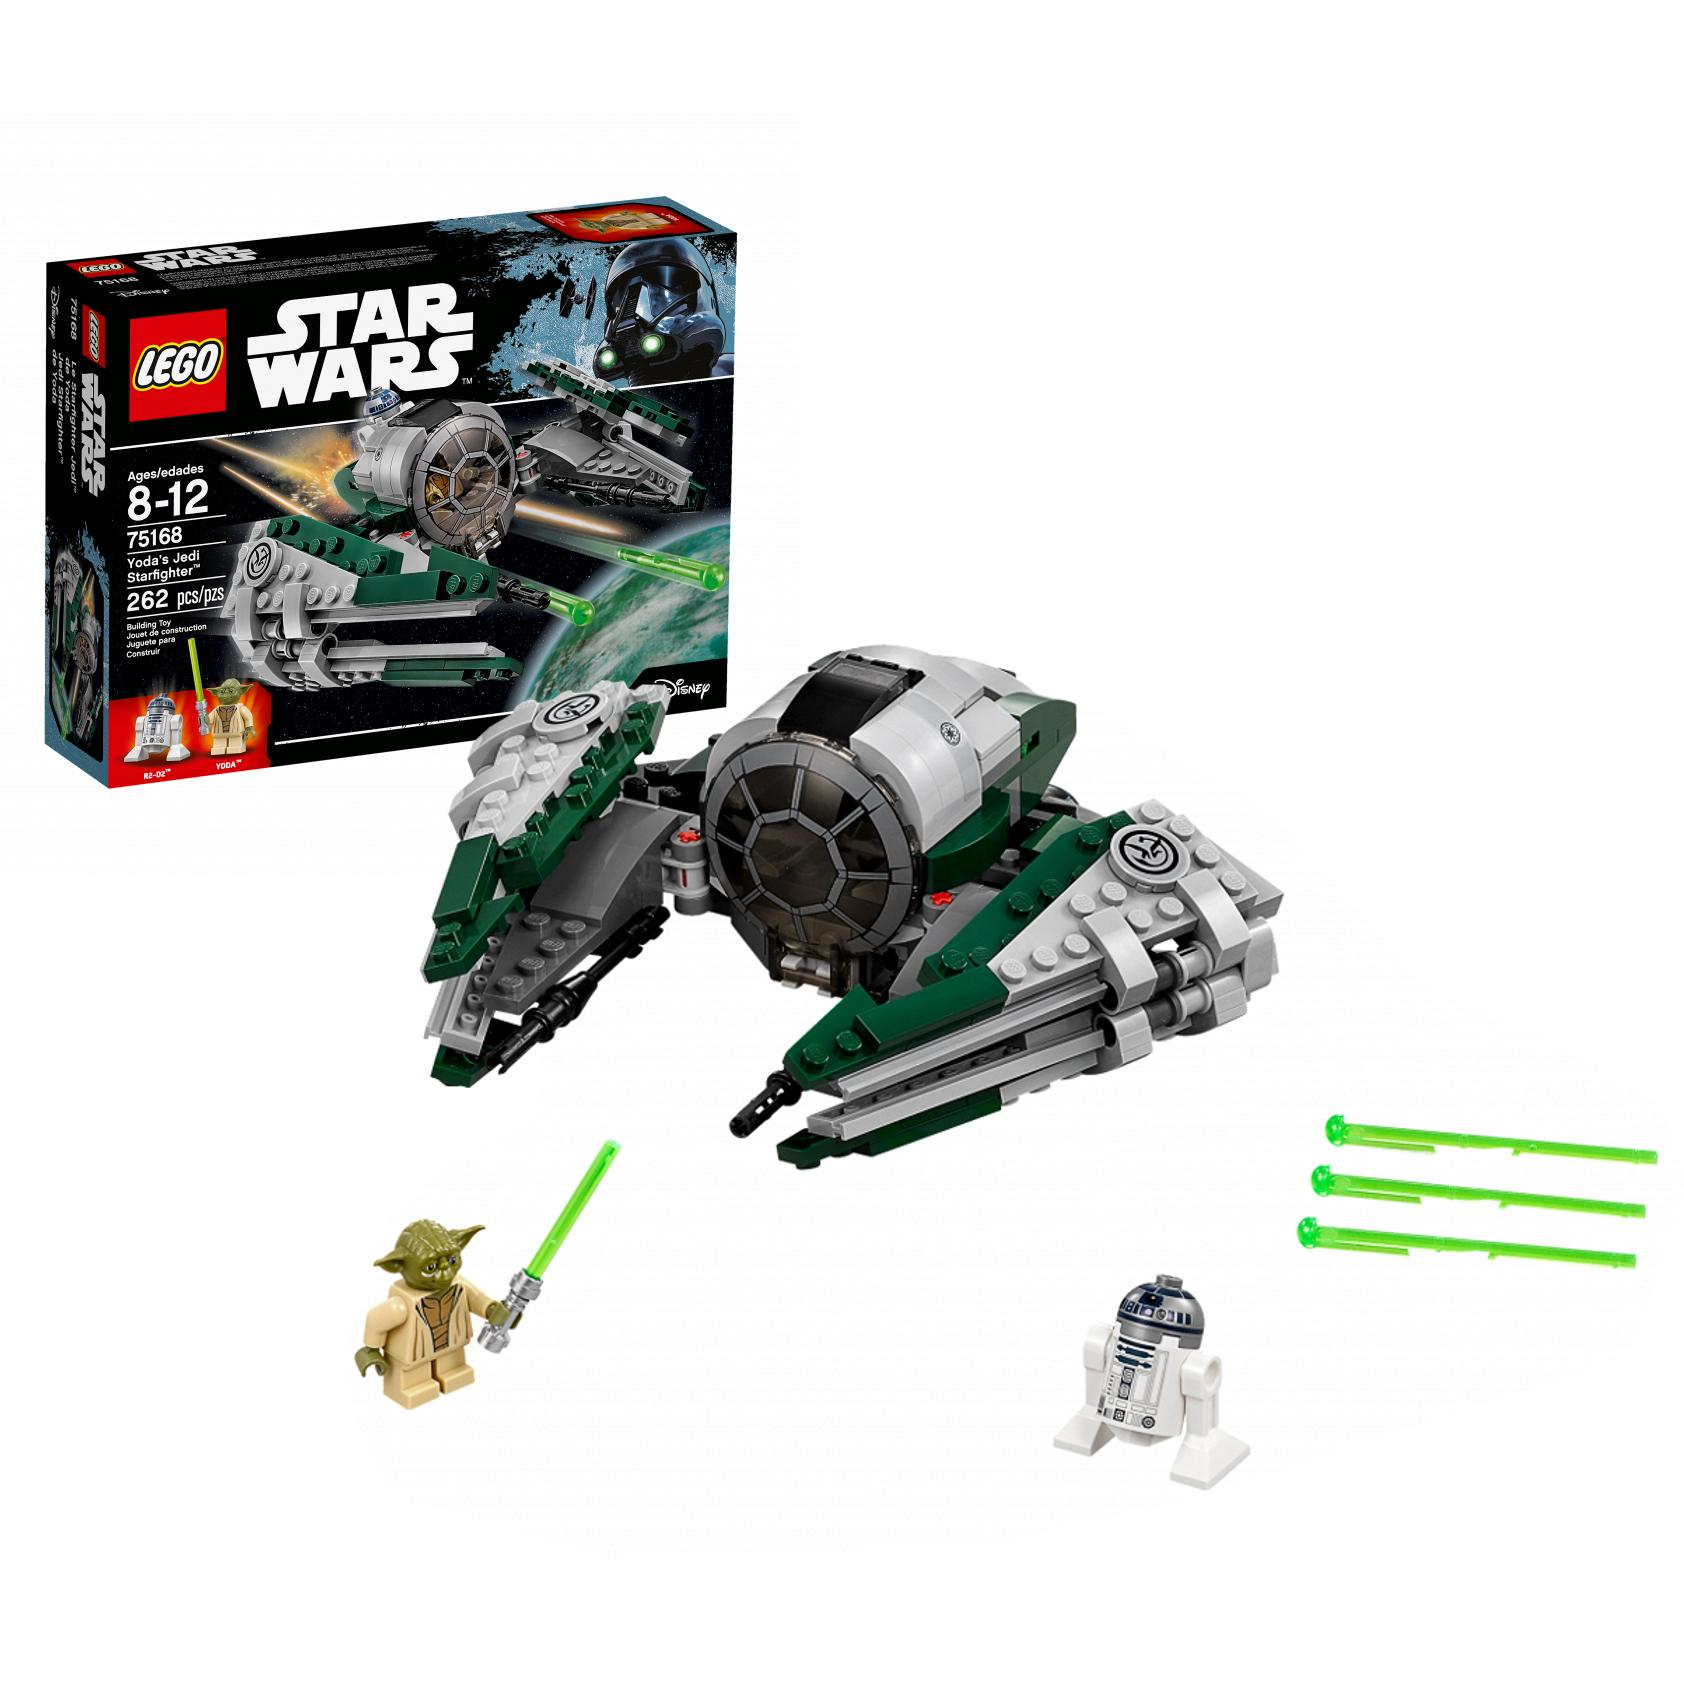 Lego Star Wars 75168 Звёздный истребитель Йоды